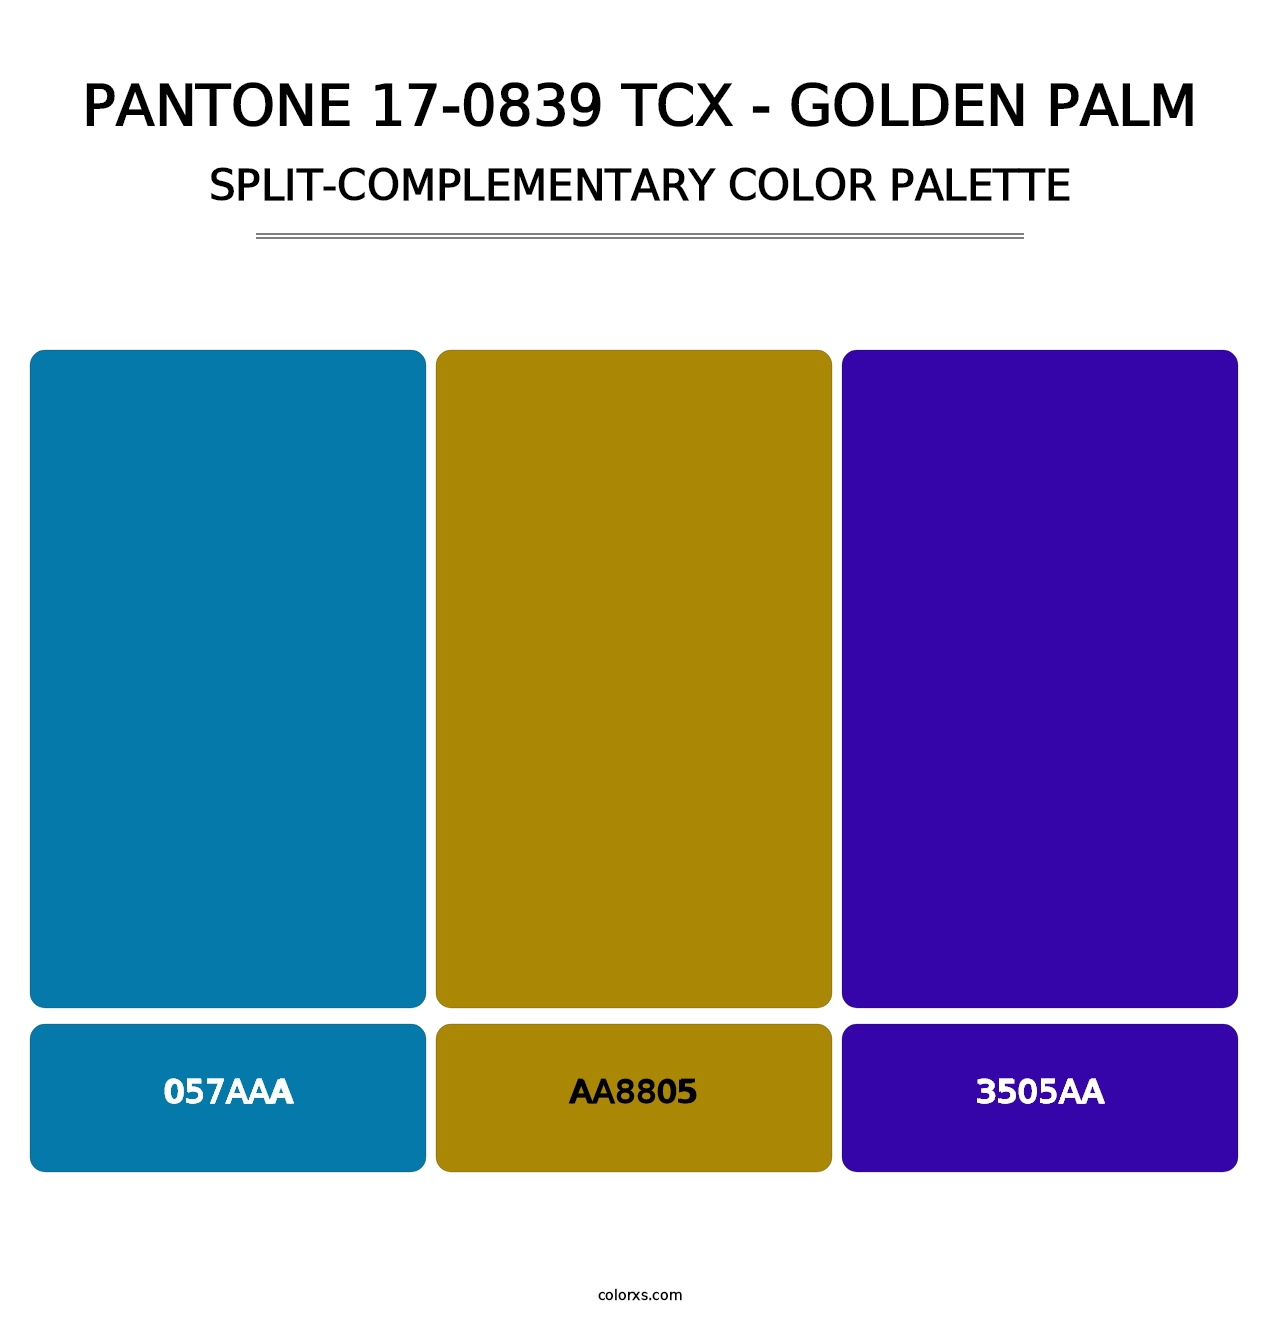 PANTONE 17-0839 TCX - Golden Palm - Split-Complementary Color Palette